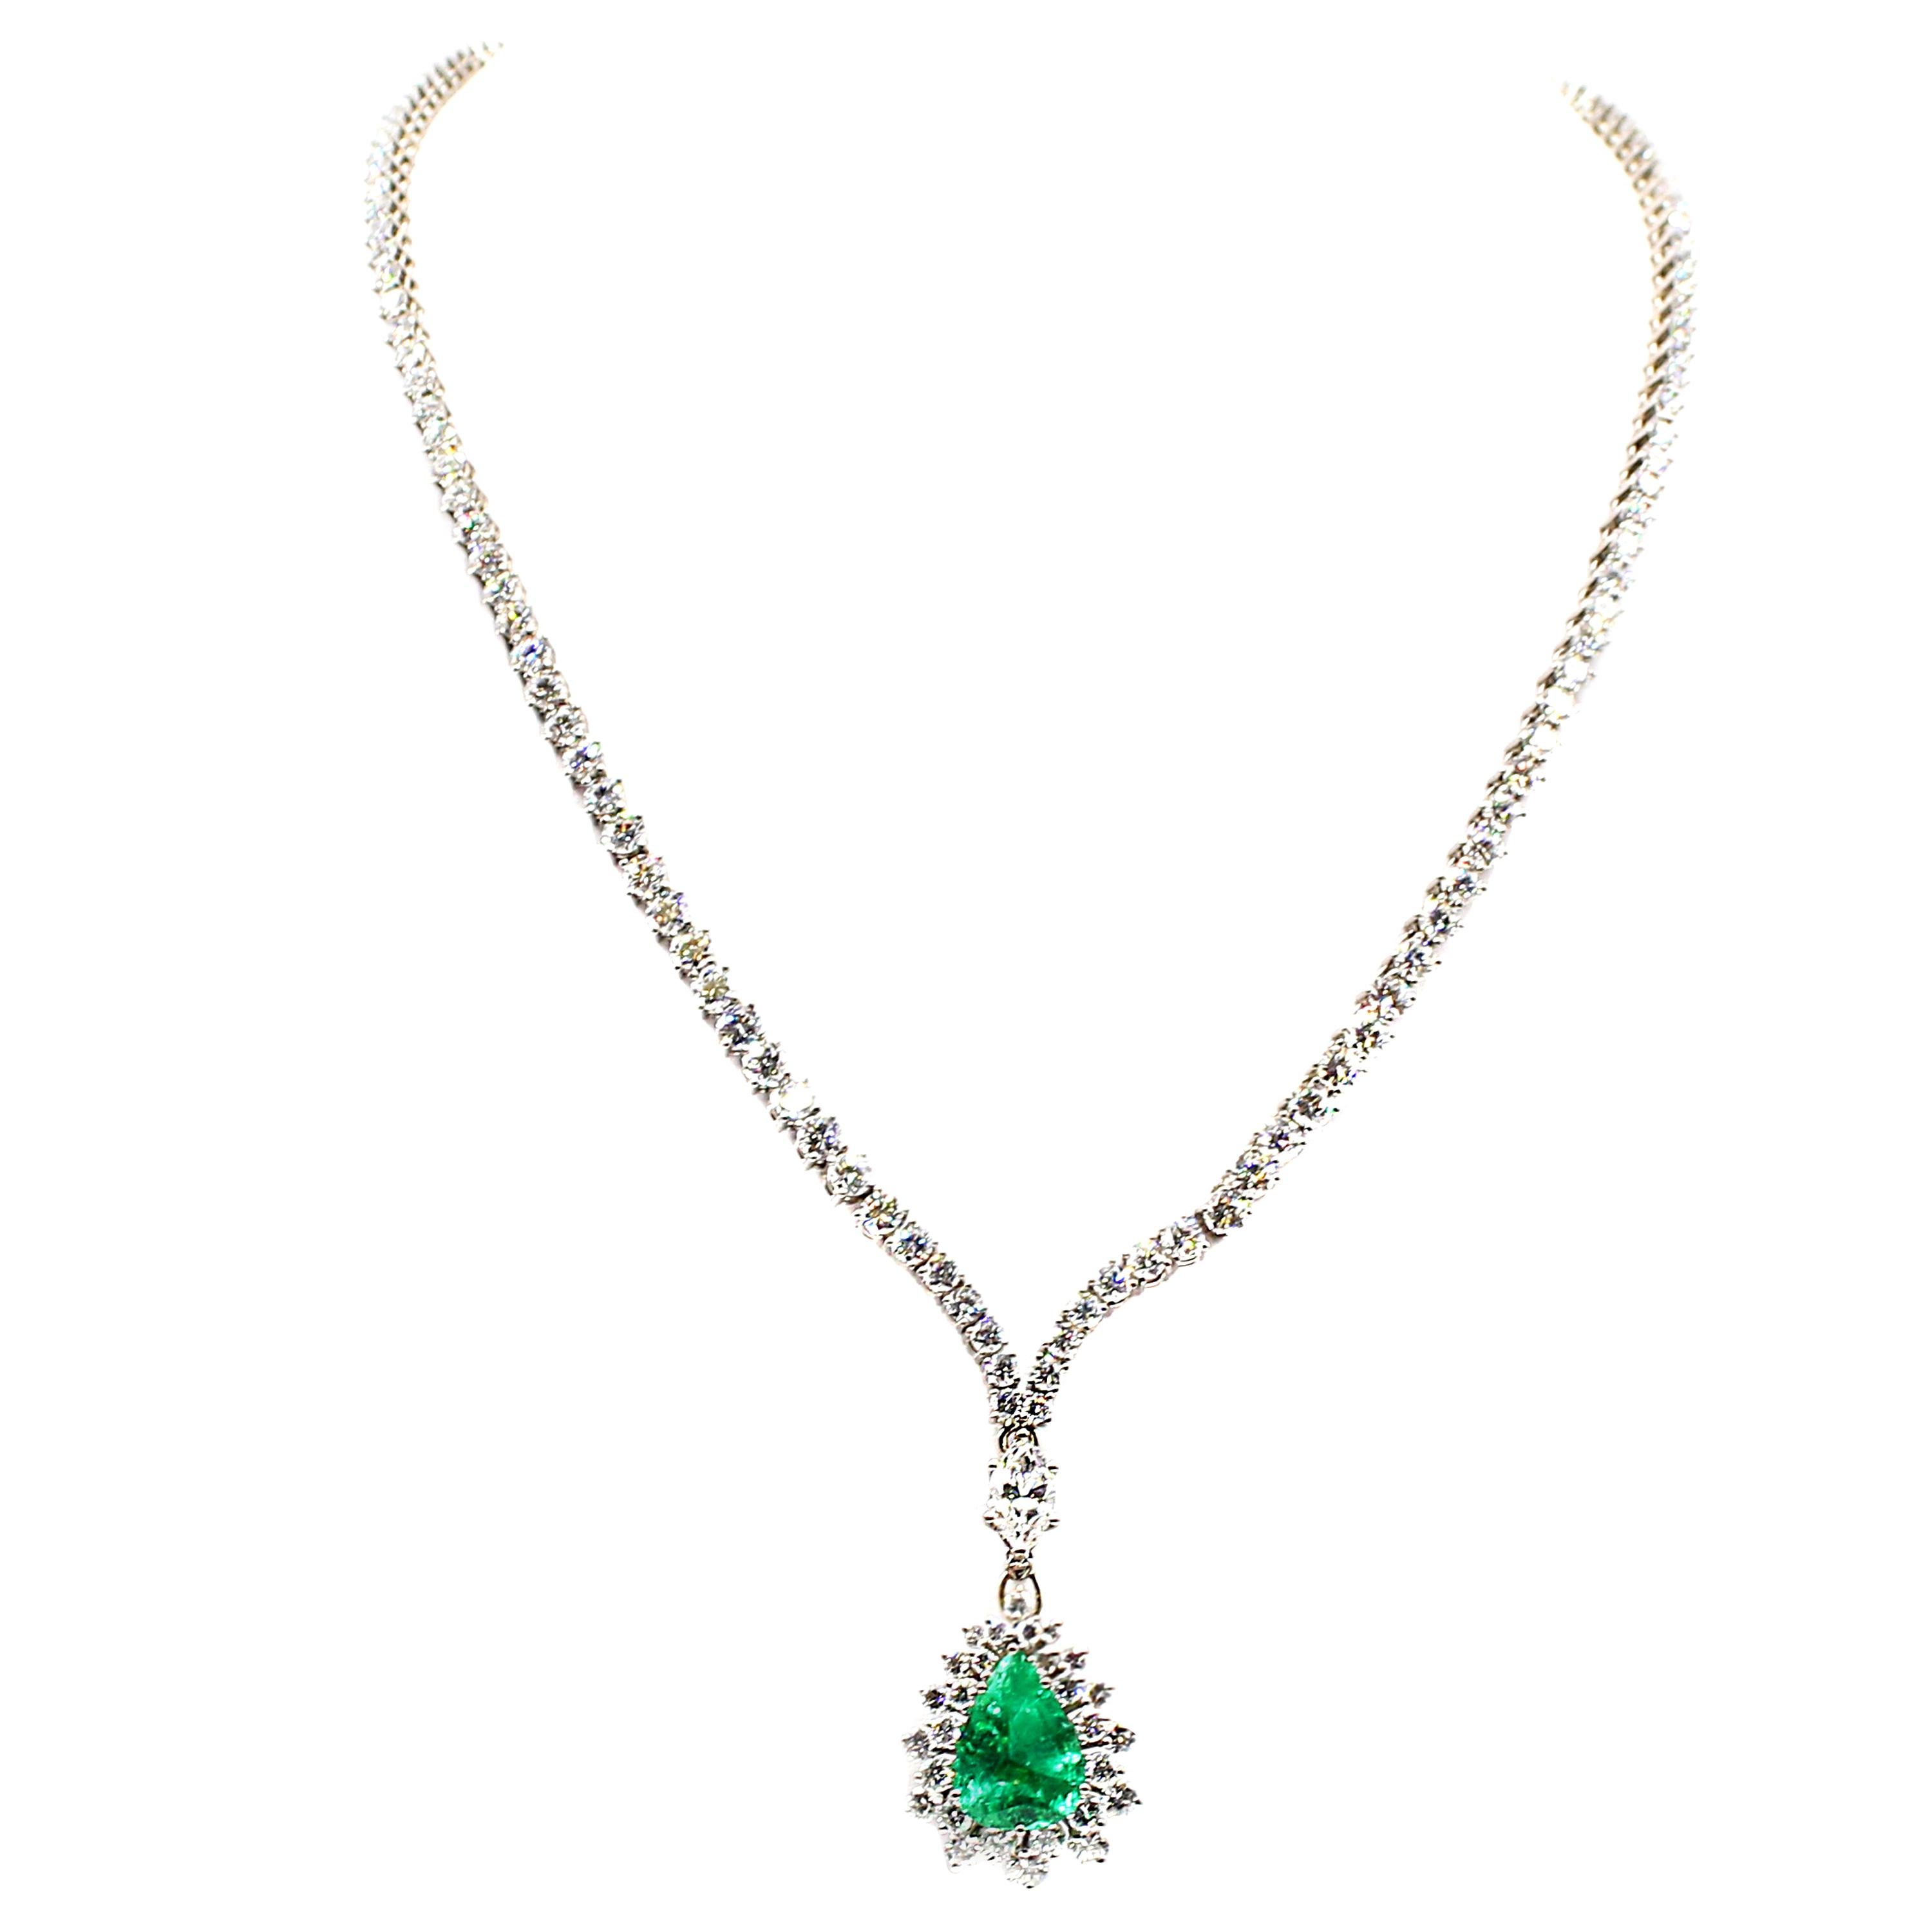 Diese elegante Halskette ist ein Klassiker mit einem leuchtend grünen, birnenförmigen kolumbianischen Smaragd von etwa 4,5 Karat. Dieses meisterhaft in Handarbeit aus 18 Karat Weißgold gefertigte Riviera-Collier, das in einer V-Form endet, ist mit